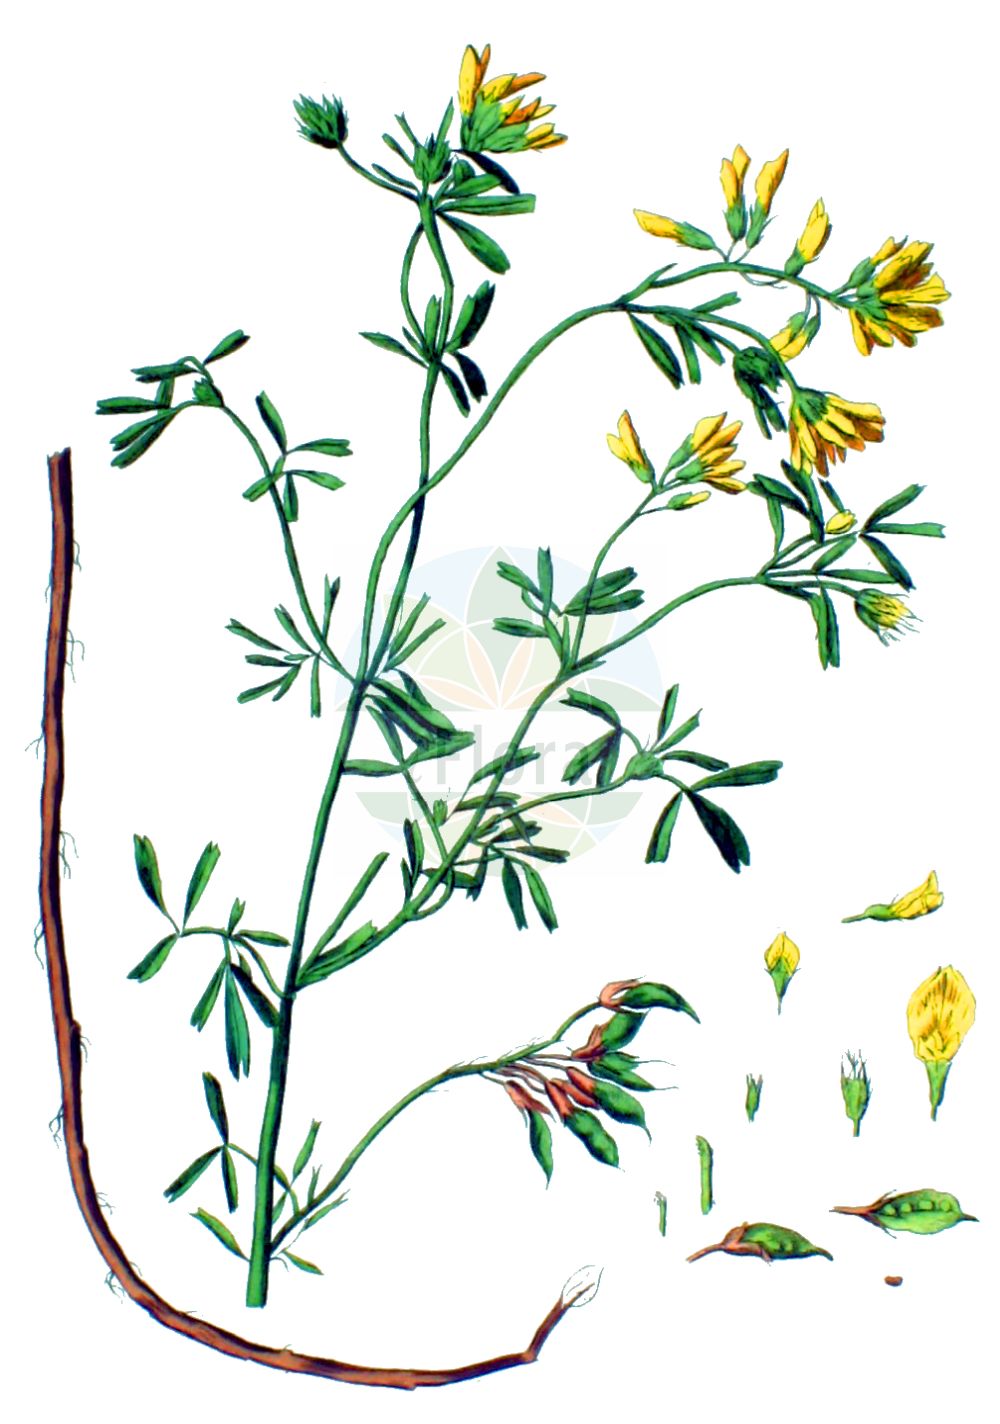 Historische Abbildung von Medicago falcata (Sichelklee - Sickle Medick). Das Bild zeigt Blatt, Bluete, Frucht und Same. ---- Historical Drawing of Medicago falcata (Sichelklee - Sickle Medick). The image is showing leaf, flower, fruit and seed.(Medicago falcata,Sichelklee,Sickle Medick,Medicago aurantiaca,Medicago borealis,Medicago falcata,Medicago falcata L. subsp.,Medicago glandulosa,Medicago kotovii,Medicago procumbens,Medicago quasifalcata,Medicago romanica,Medicago tenderiensis,Sichelklee,Bastard-Luzerne,Blaue Luzerne,Gelbe Luzerne,Gewoehnliche Luzerne,Sichel-Schneckenklee,Sickle Medick,Yellow Alfalfa,Yellow-flower Lucerne,Medicago,Schneckenklee,Alfalfa,Fabaceae,Schmetterlingsblütler,Pea family,Blatt,Bluete,Frucht,Same,leaf,flower,fruit,seed,Kops (1800-1934))